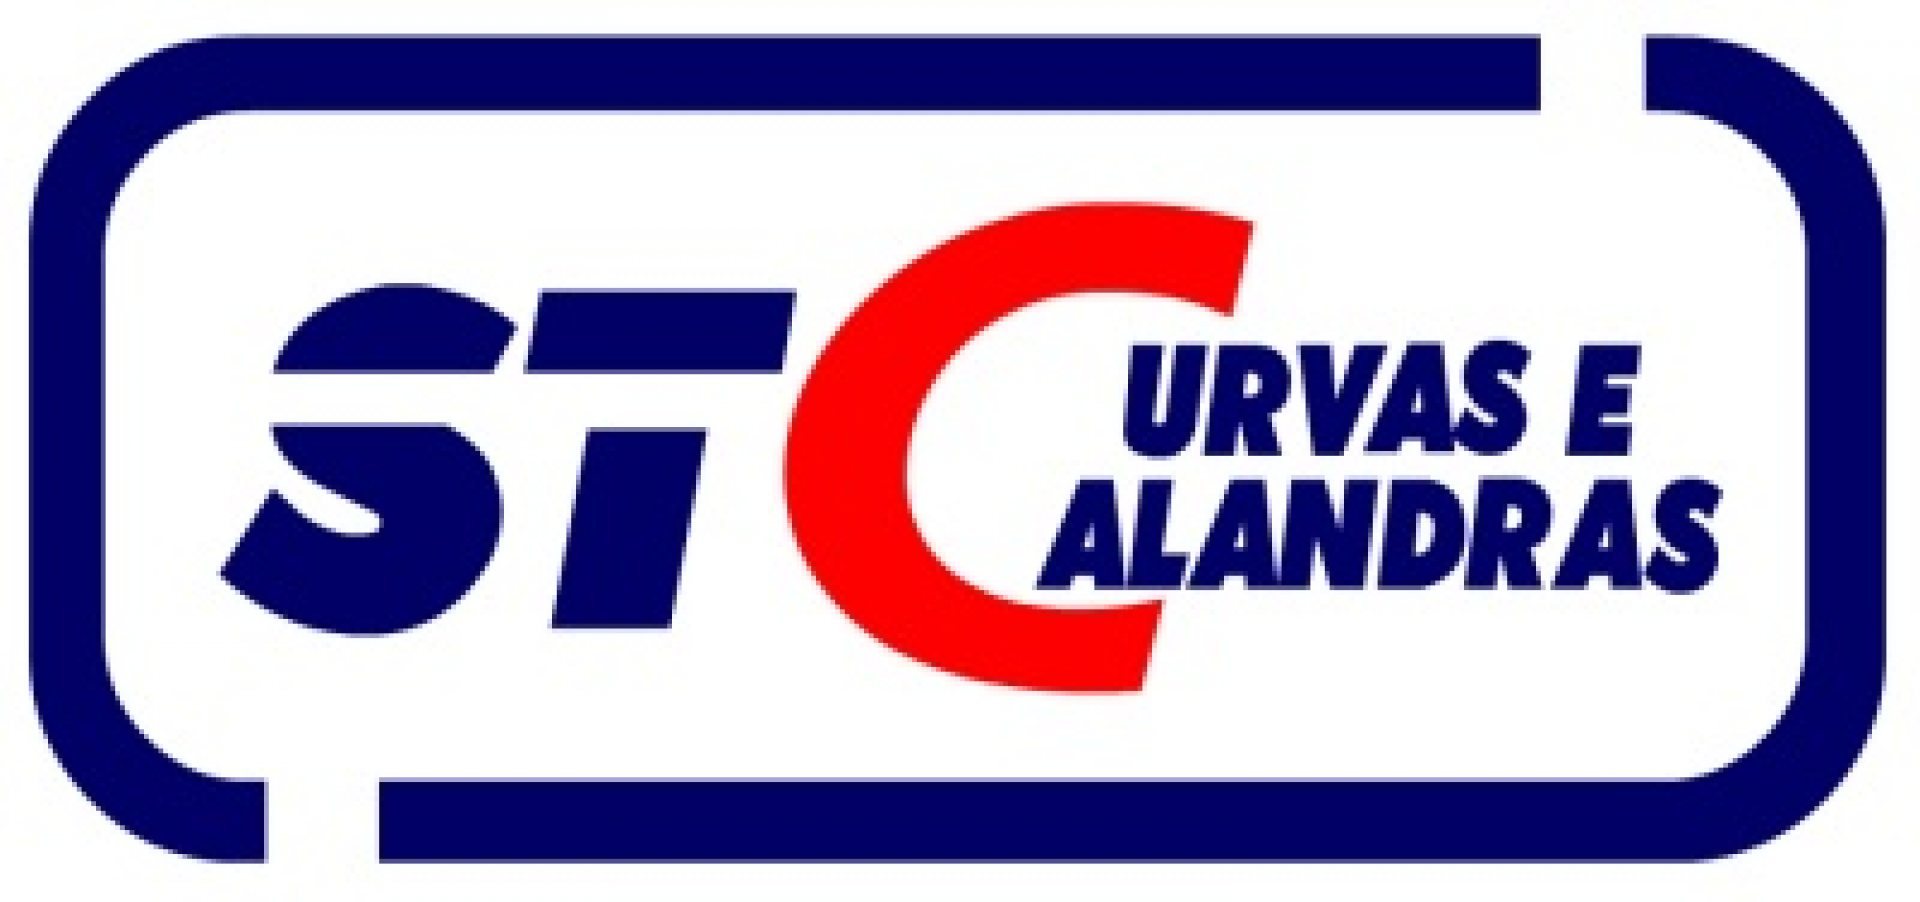 Logomarca StCurvas